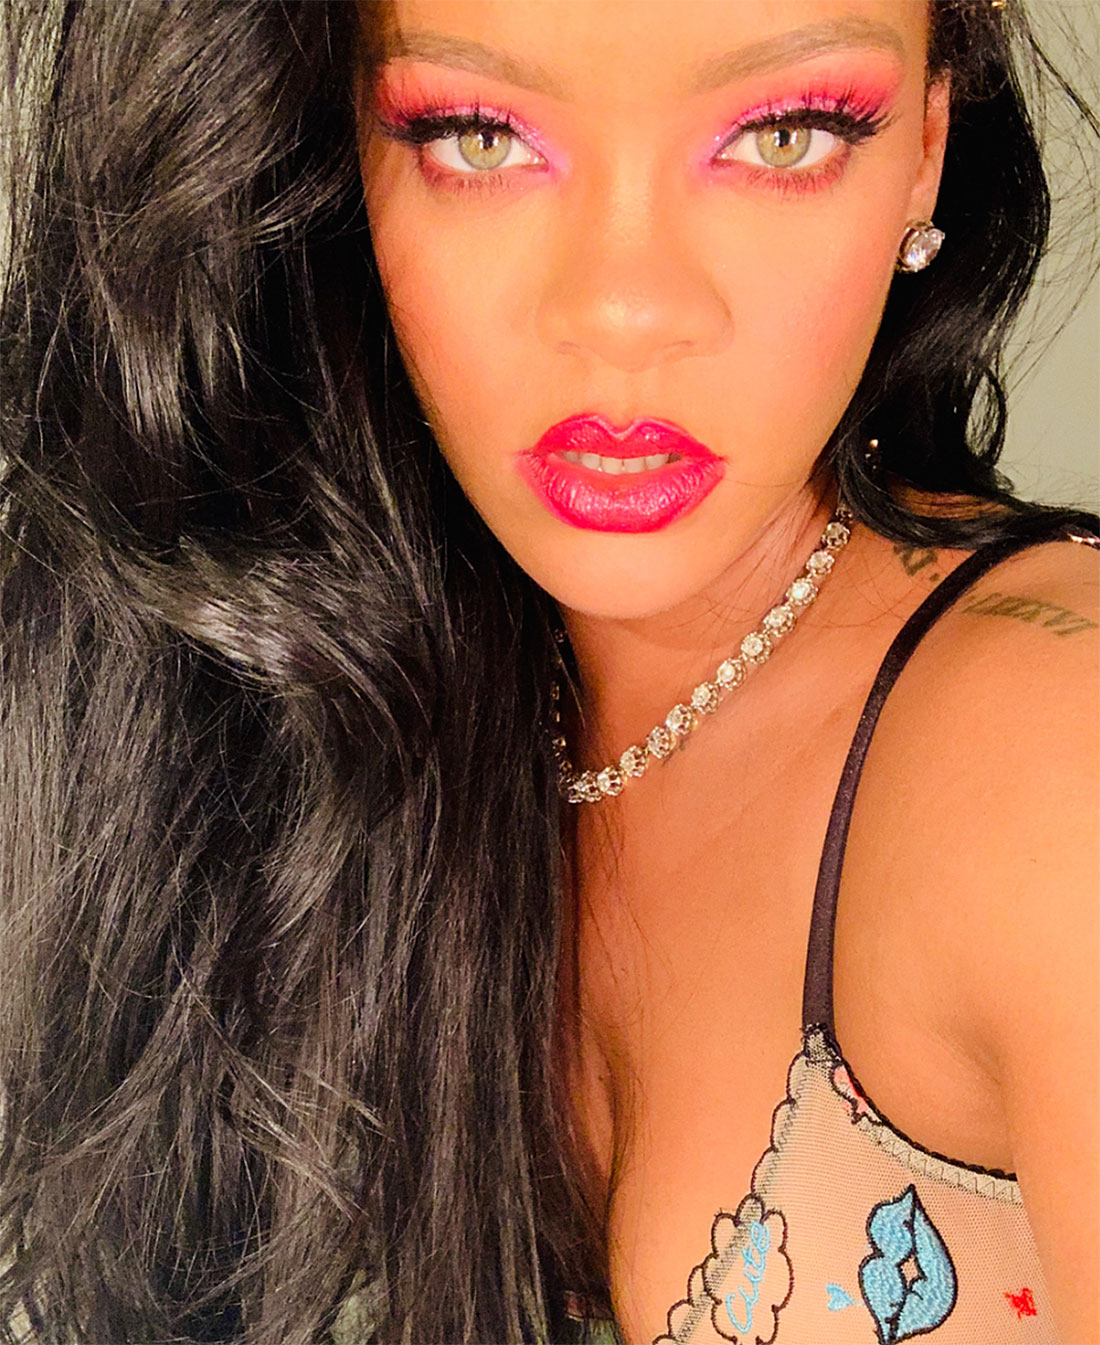 Rihanna Lingerie Instagram September 23, 2019